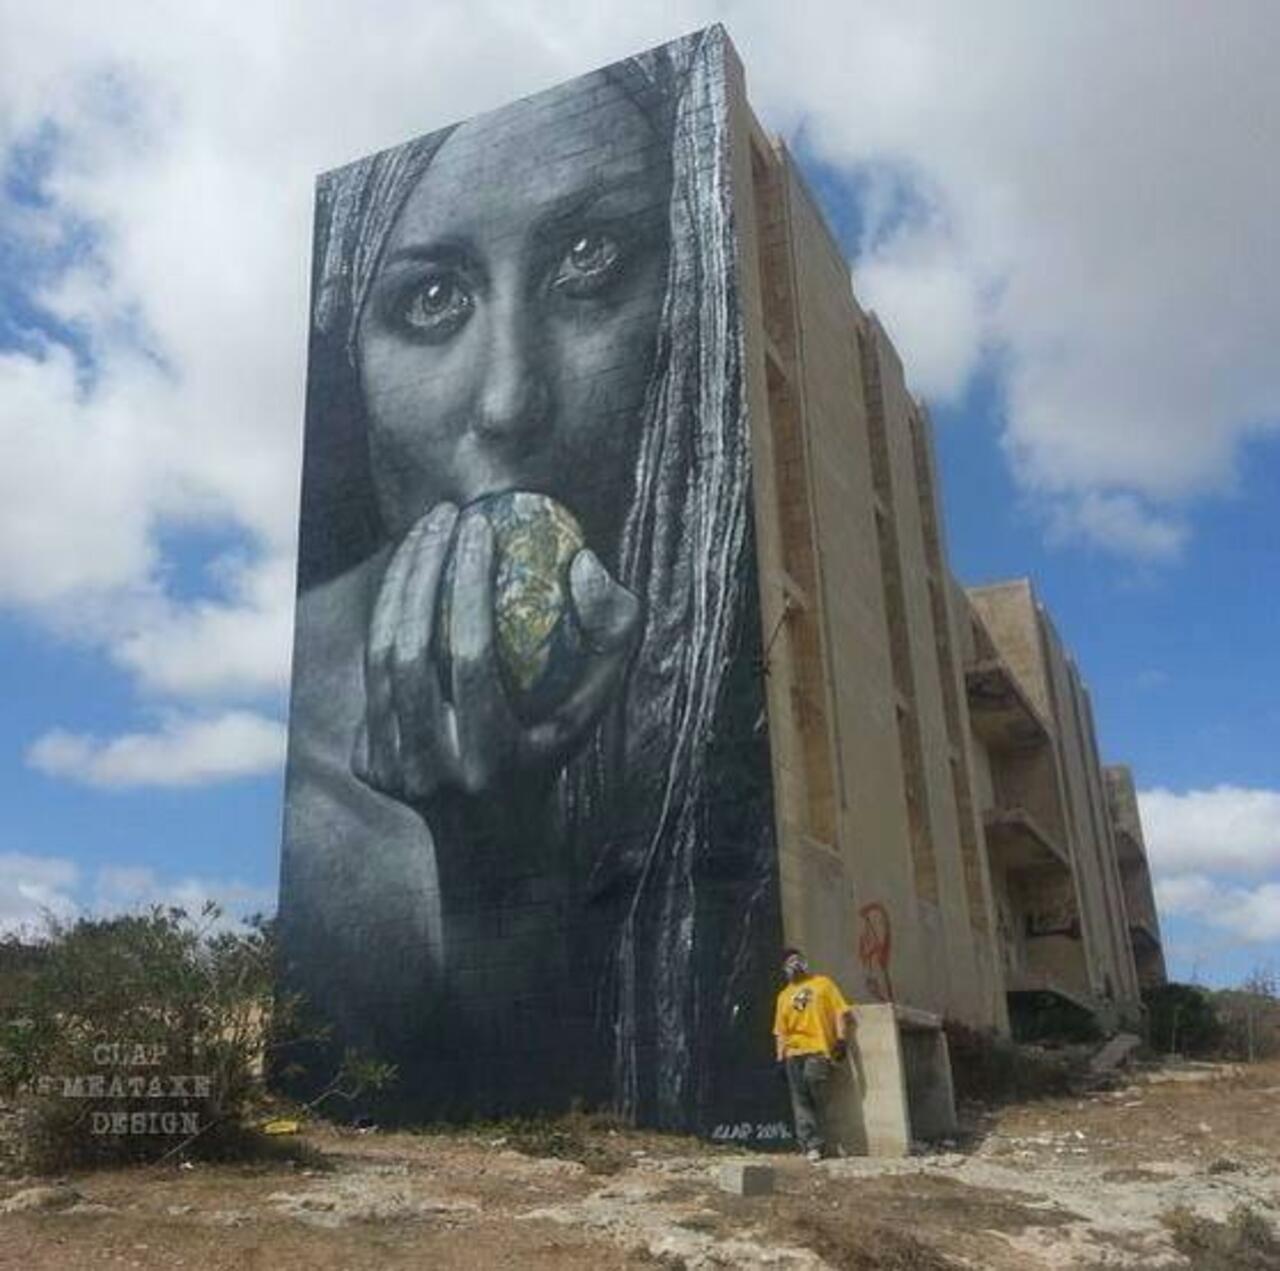 Artist Meataxe new awesome large scale Street Art mural in Malta #art #graffiti #mural #streetart https://t.co/E6z9GtPfe3